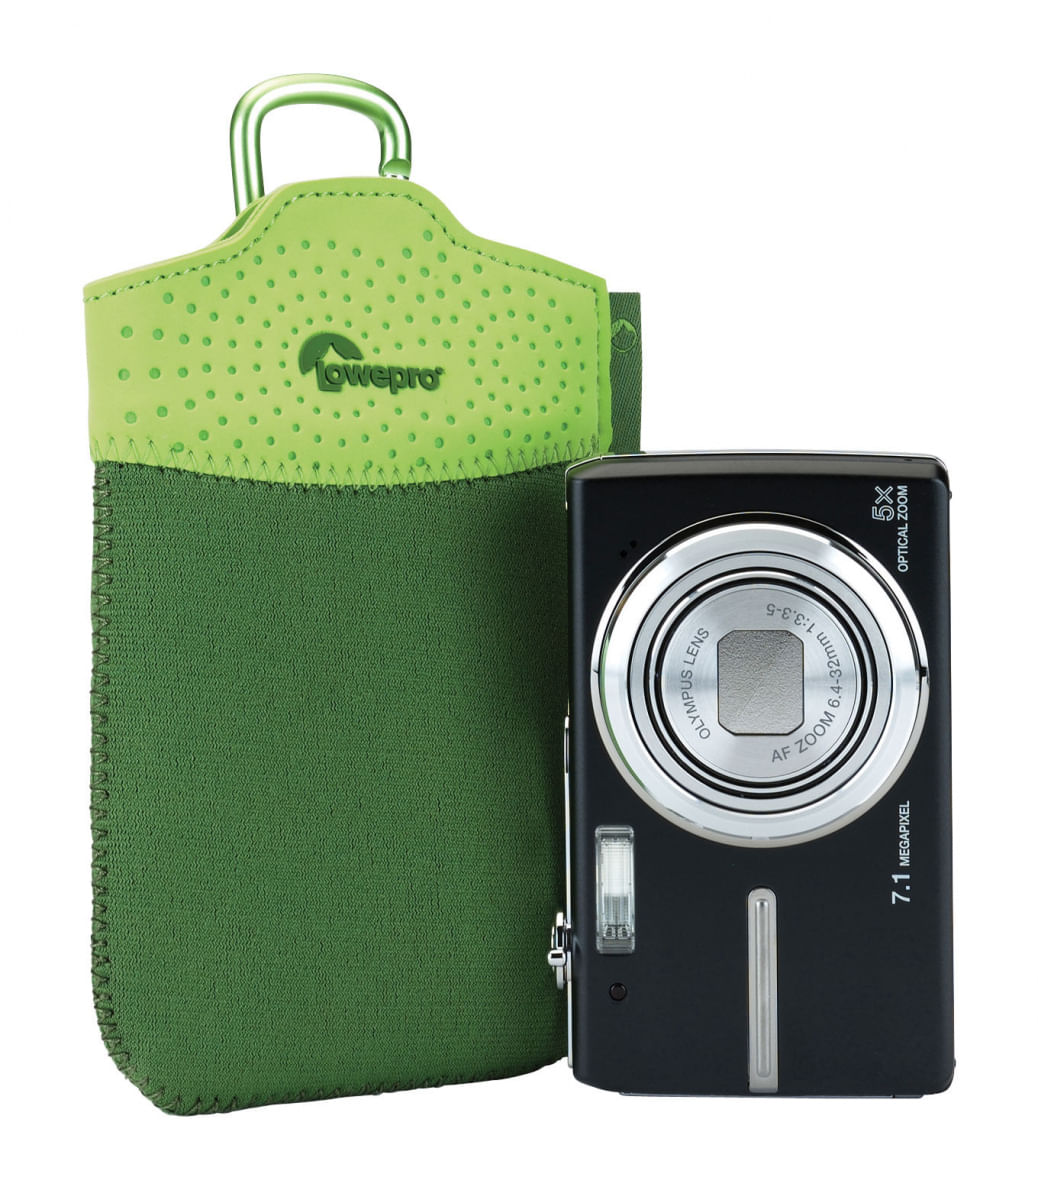 Estojo com fivela mosquetão para câmera digital, Smartphone, iPod e MP3 Player - Tasca 10